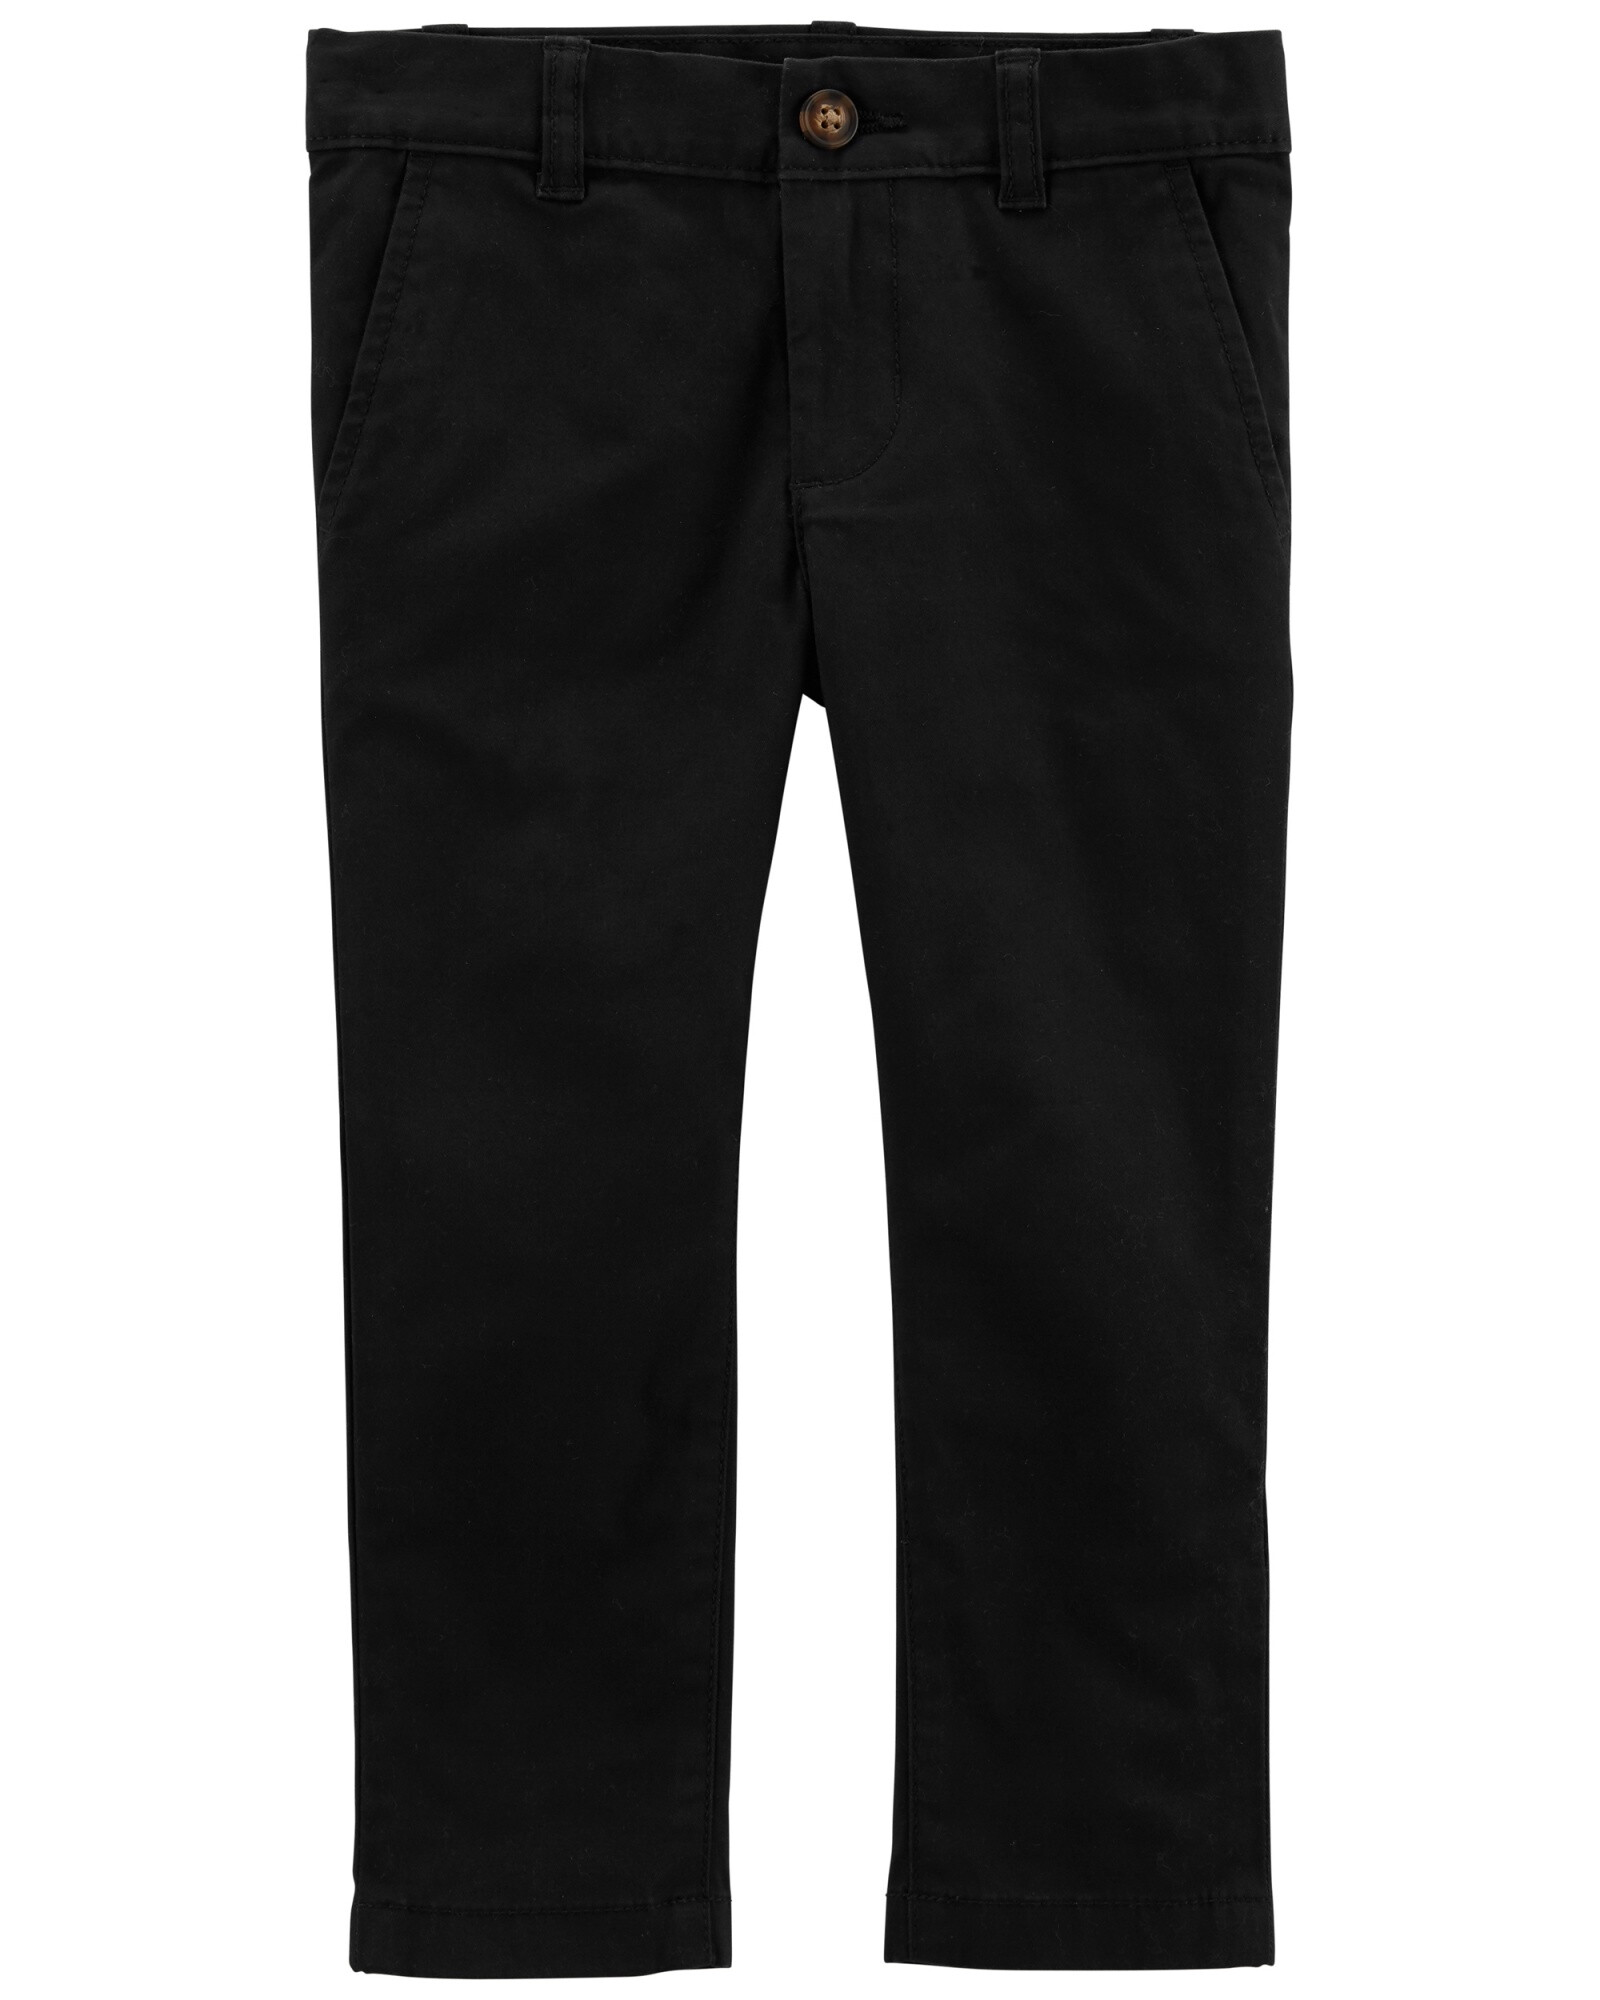 Pantalón de sarga clásico color negro 0